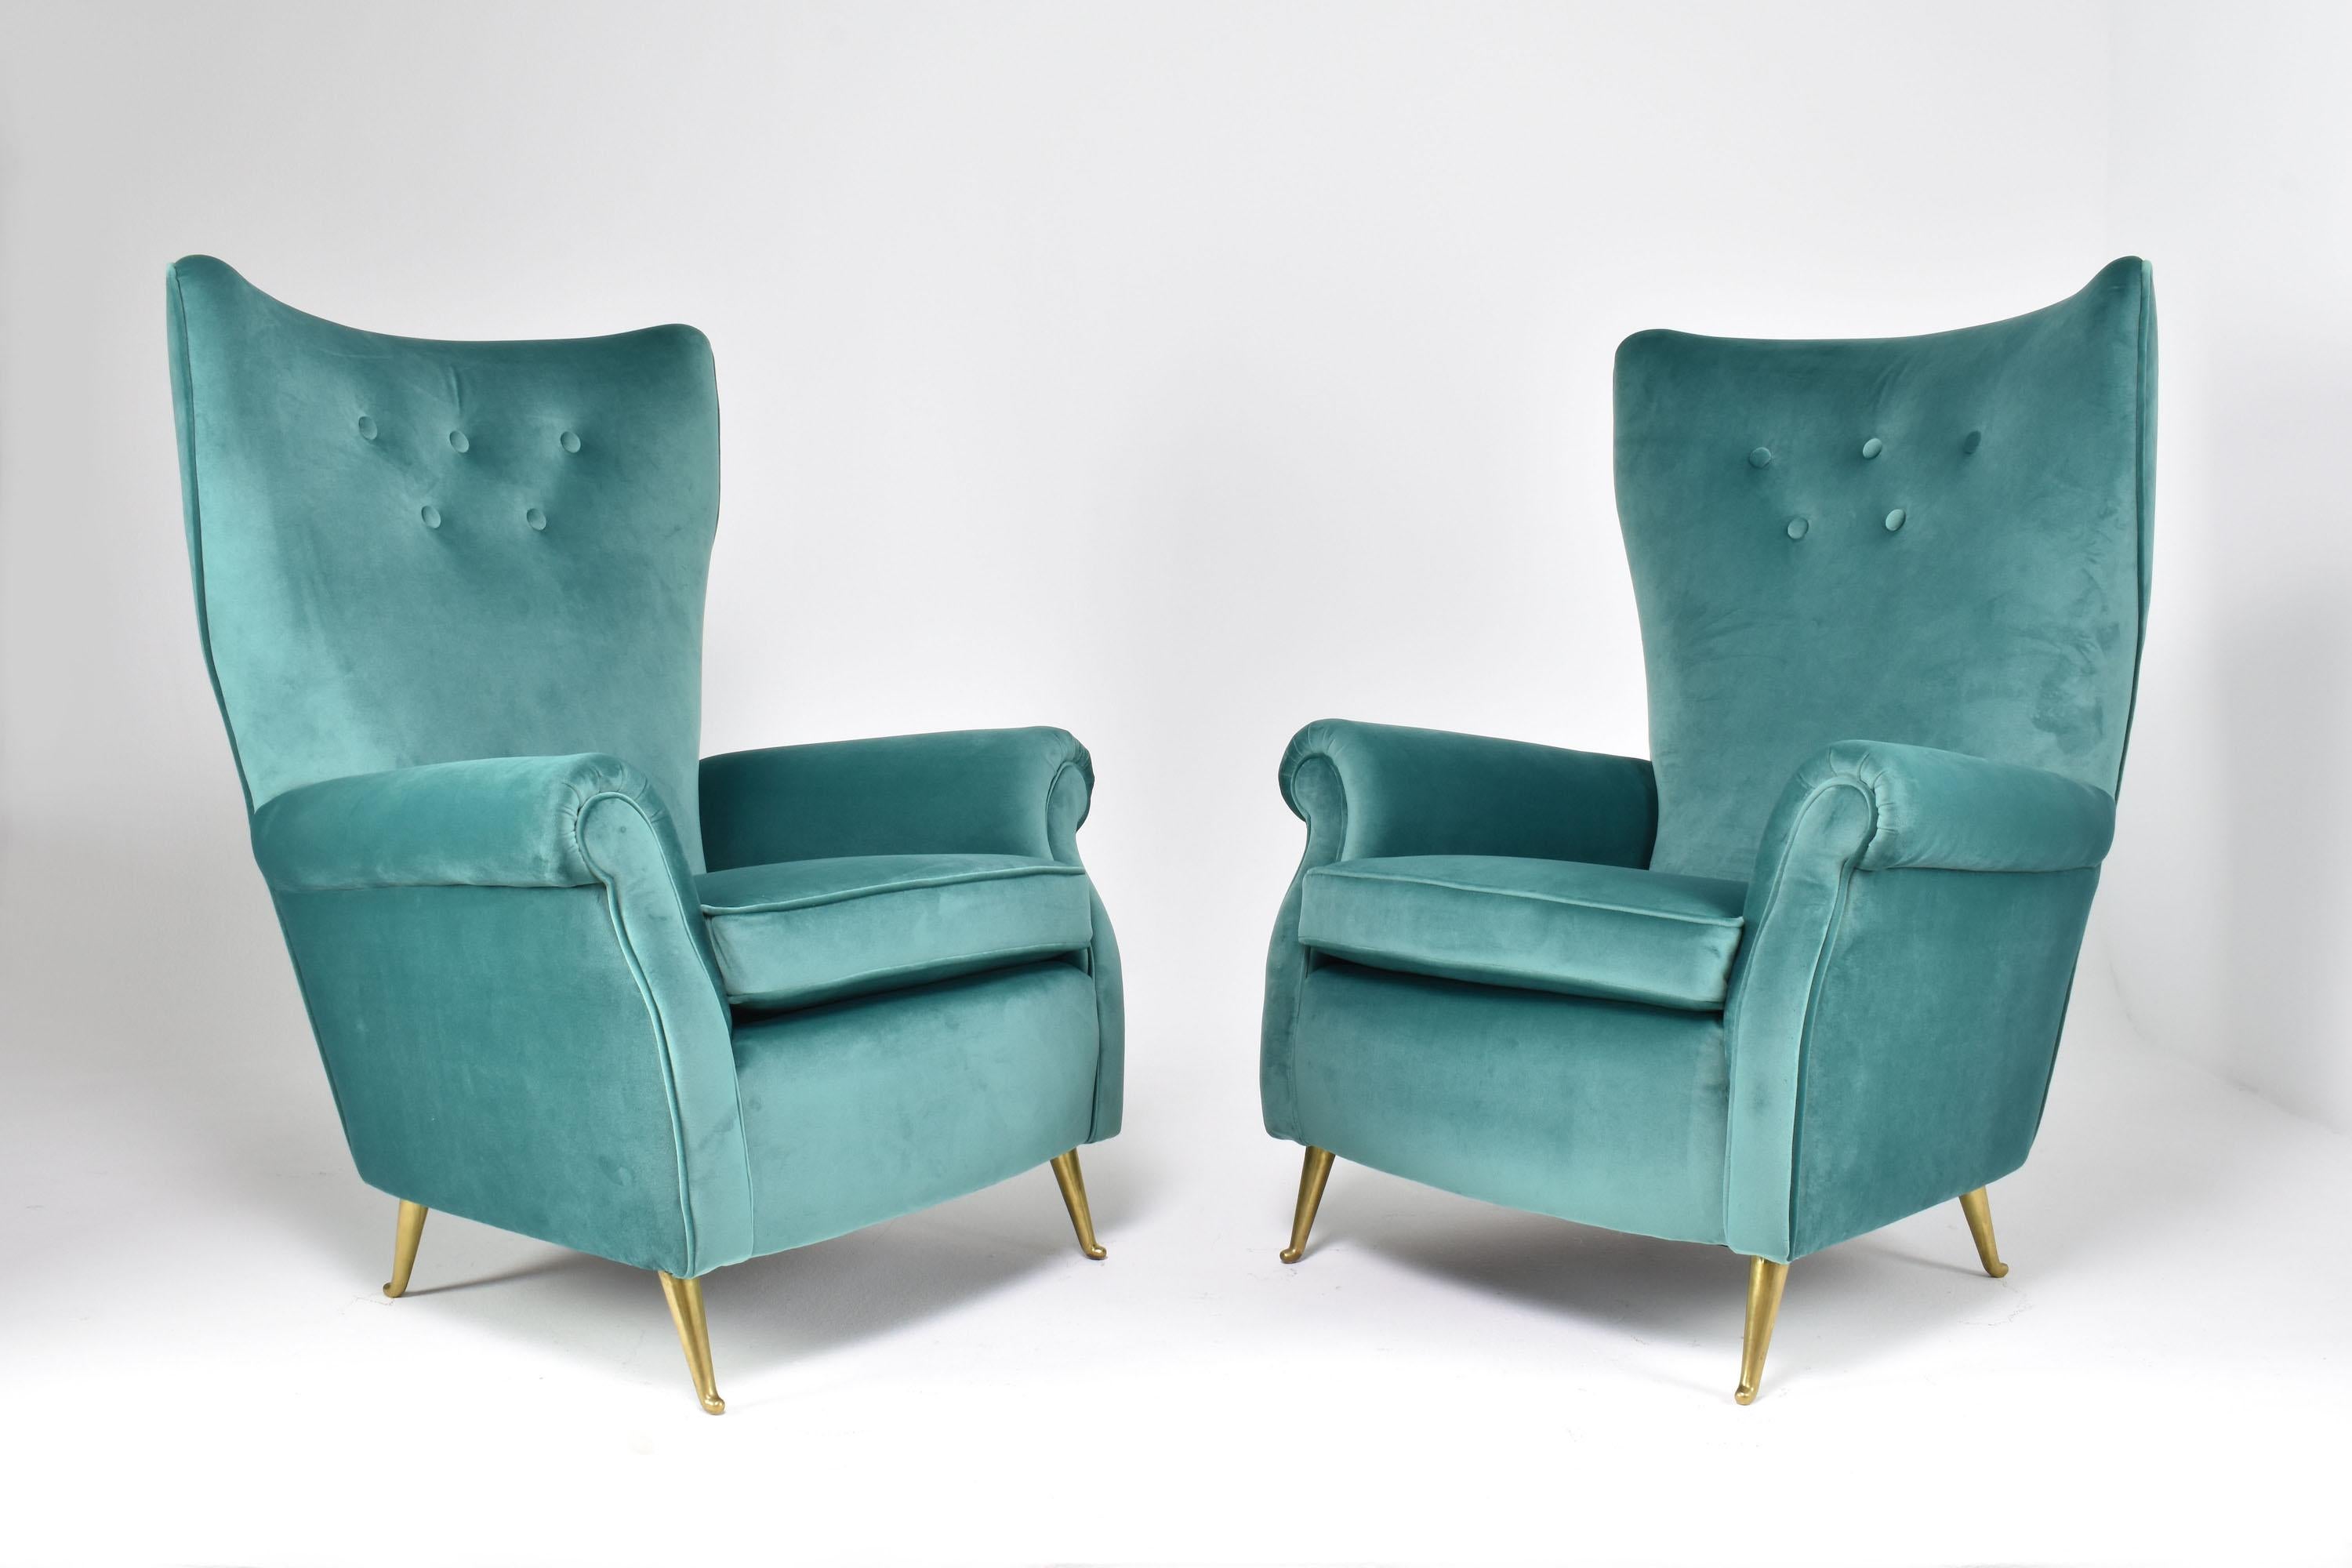 ISA Bergamo est un célèbre fabricant italien de meubles du XXe siècle connu pour son artisanat exceptionnel et son dévouement à la production de pièces de haute qualité. Cette paire de fauteuils club italiens vintage du XXe siècle témoigne de